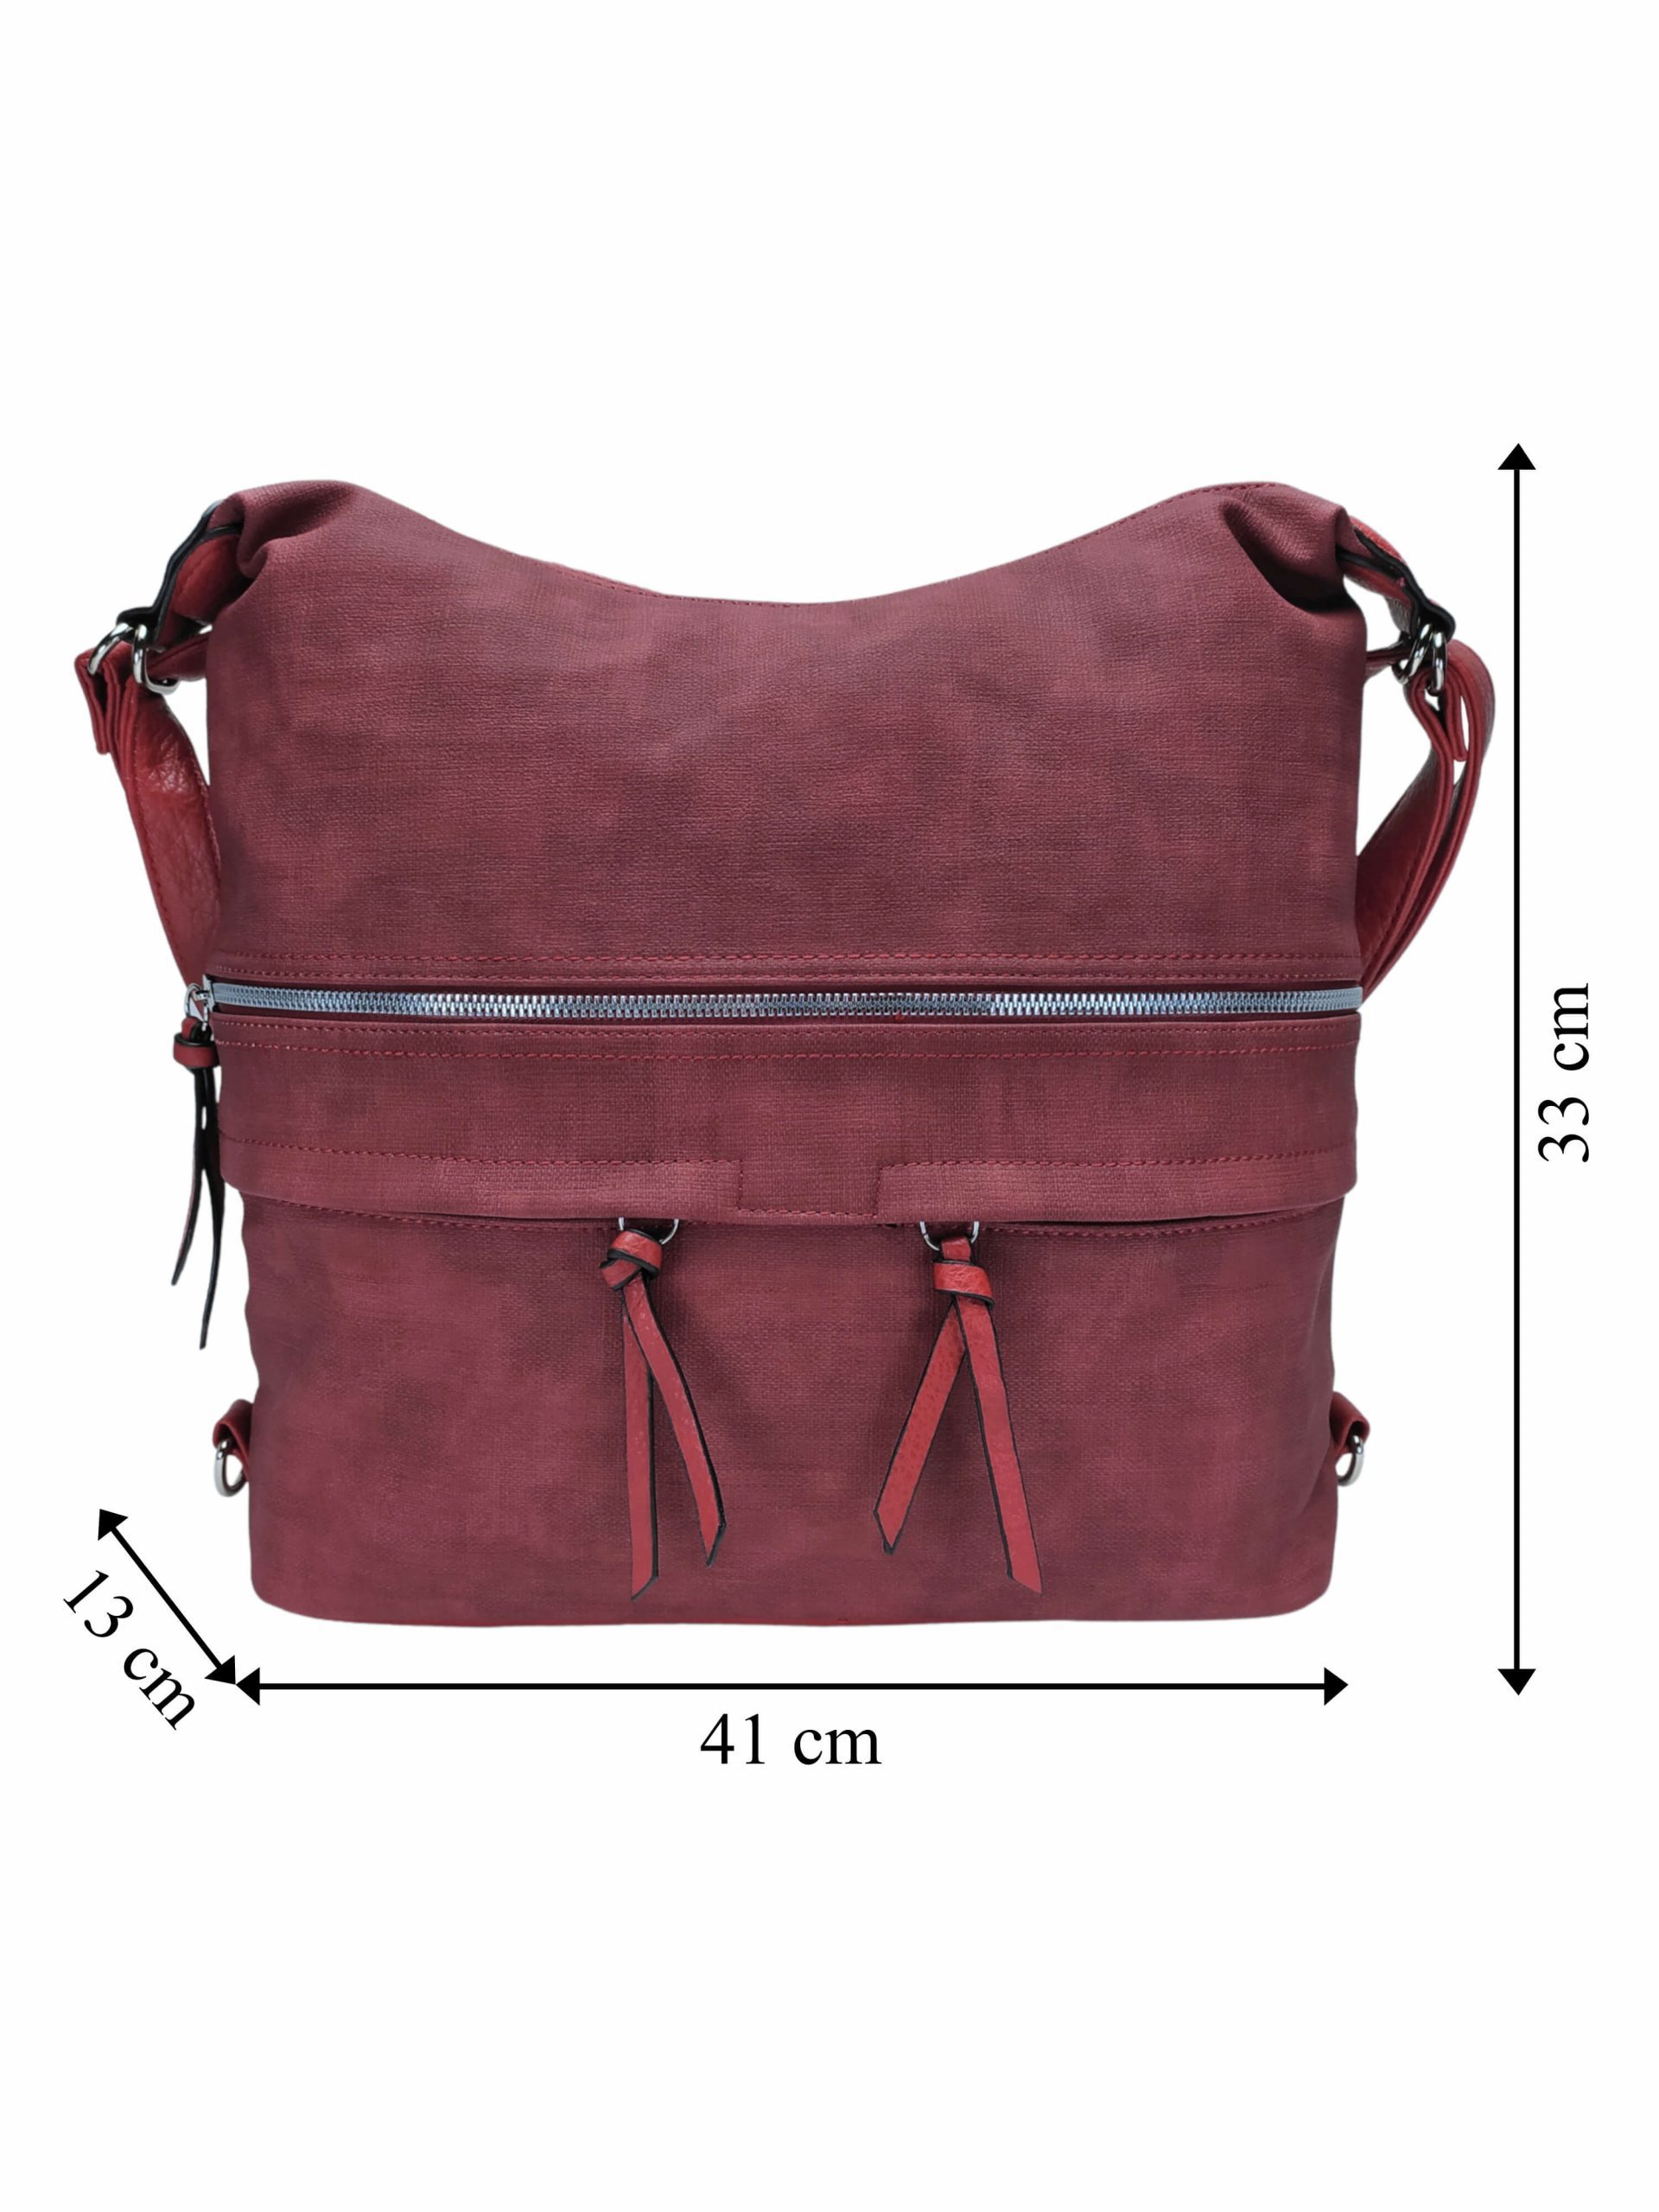 Velká vínová / bordó kabelka a batoh 2v1 s kapsami, Tapple, H181175N, přední strana kabelky a batohu 2v1 s rozměry